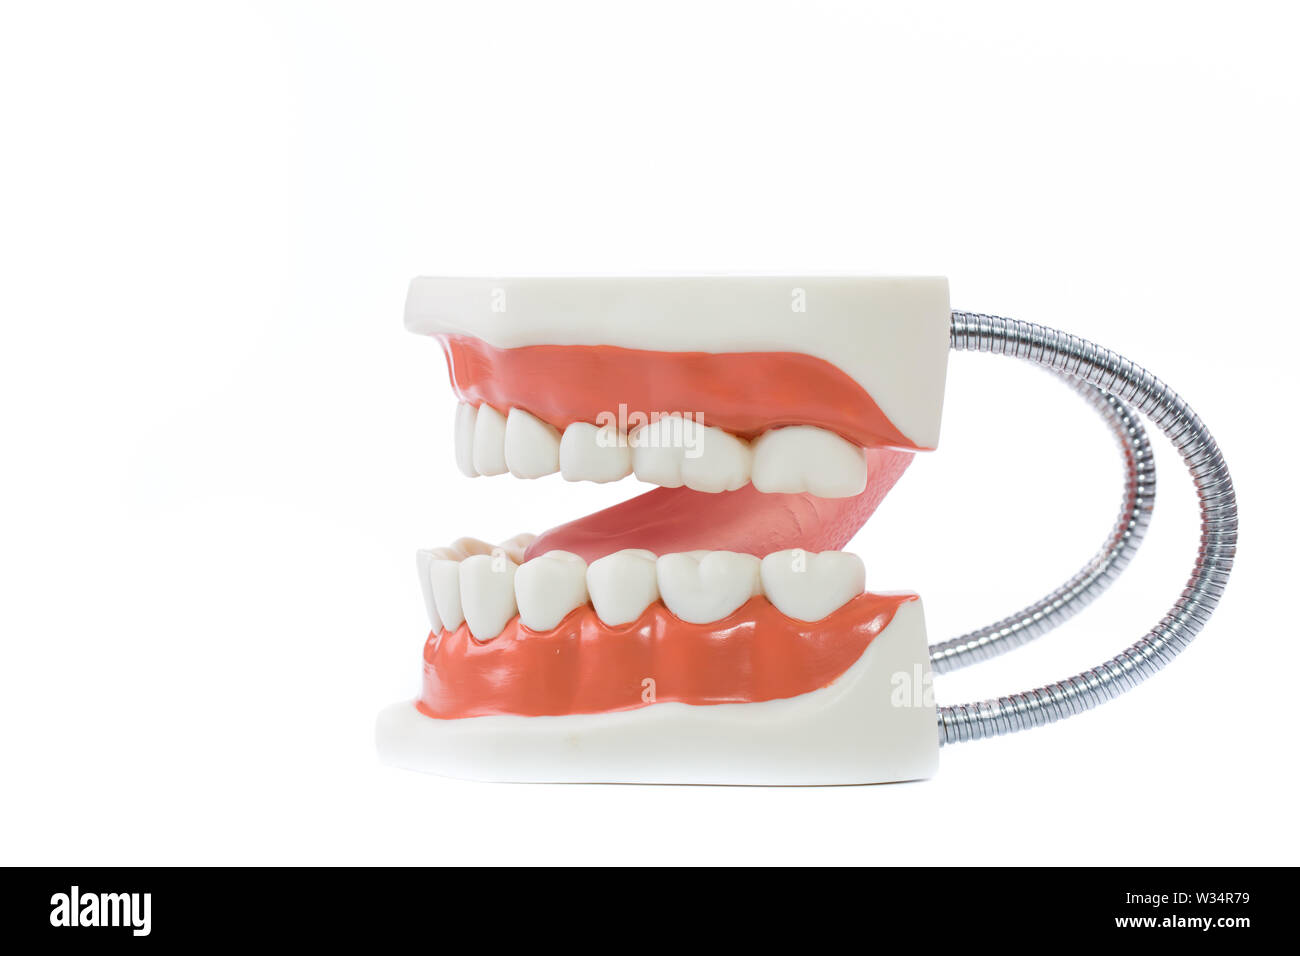 dental model,teeth model on white background. Stock Photo